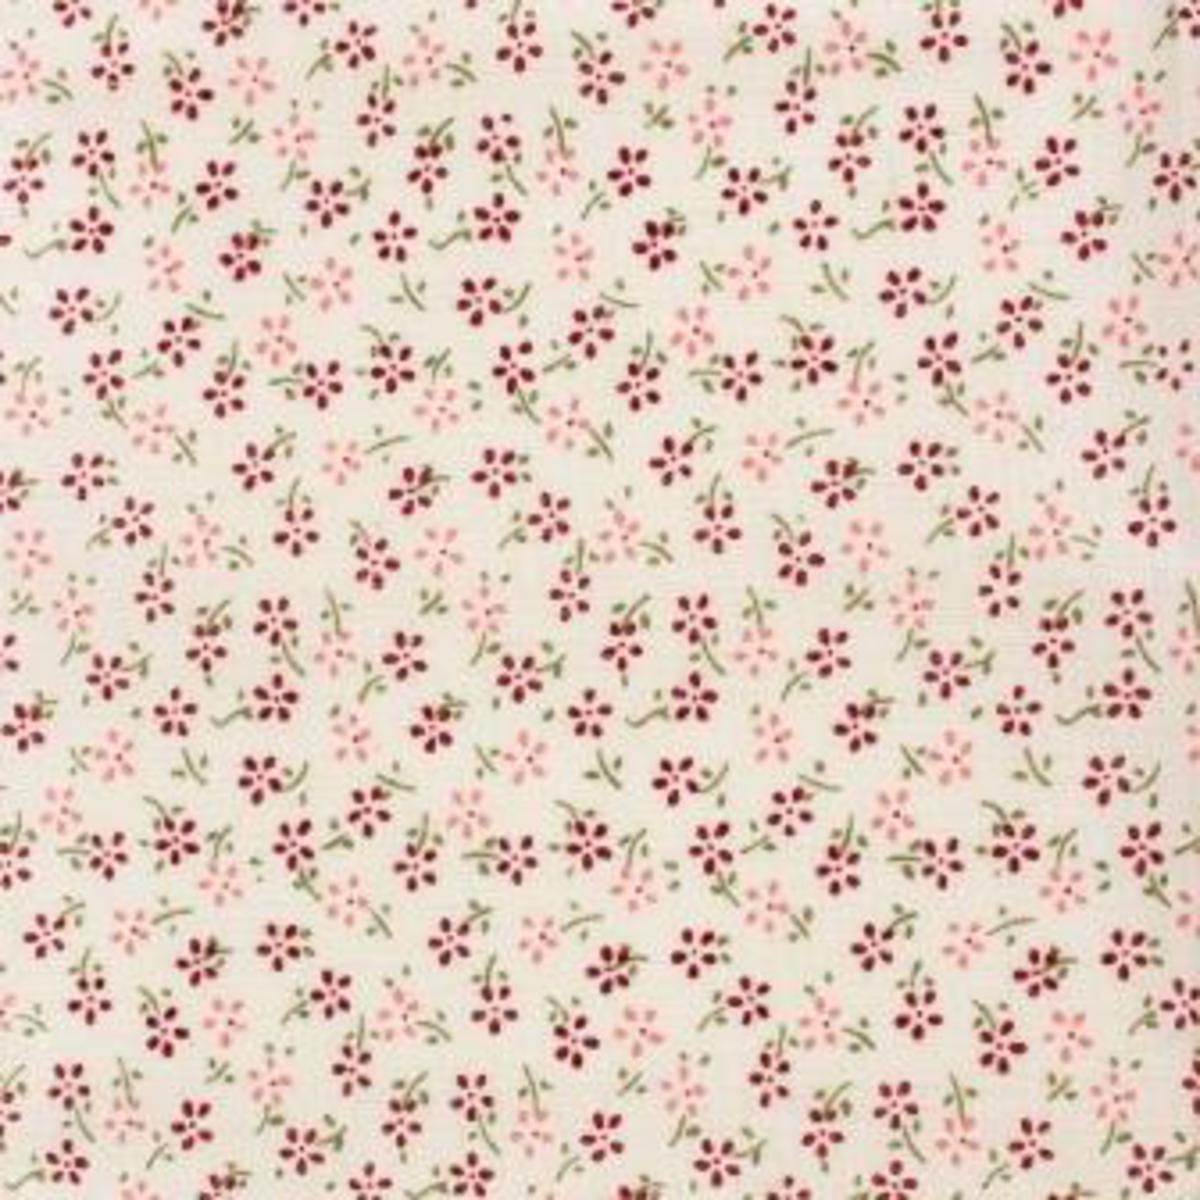 Pièce de coton imprimé fleurs - 55 x 45,5 cm - Bordeaux et rose